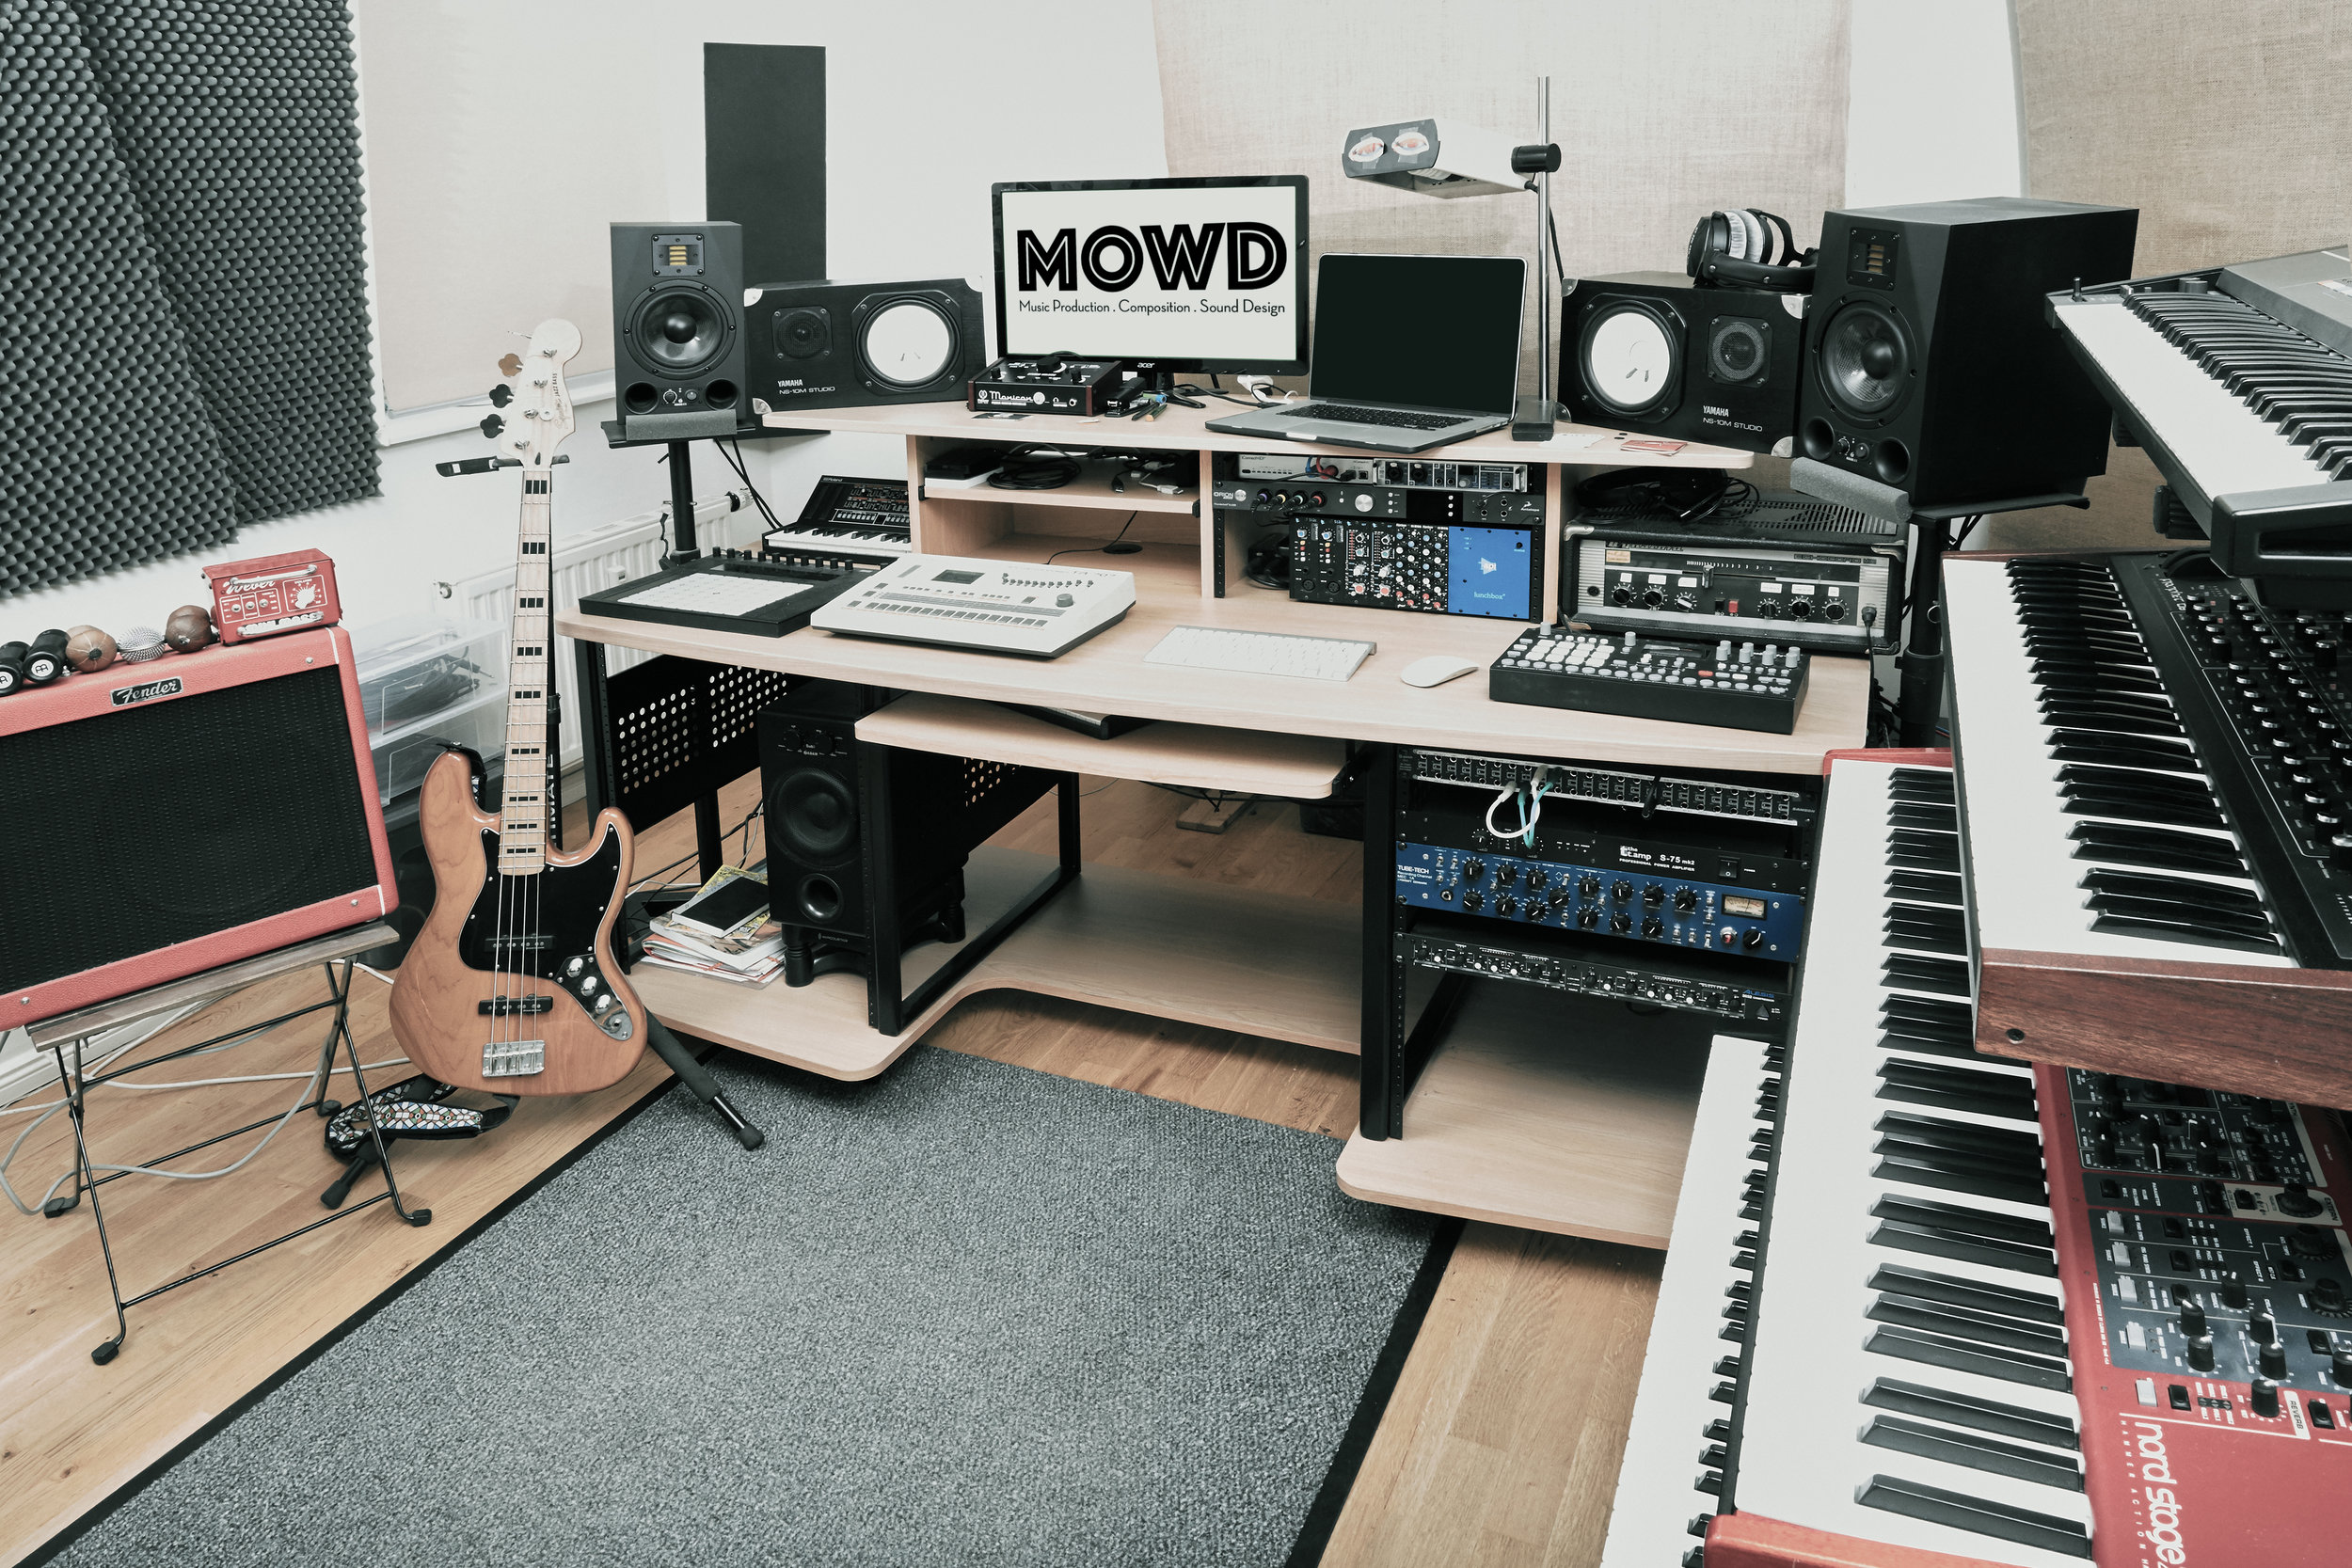 The Studio Mowd